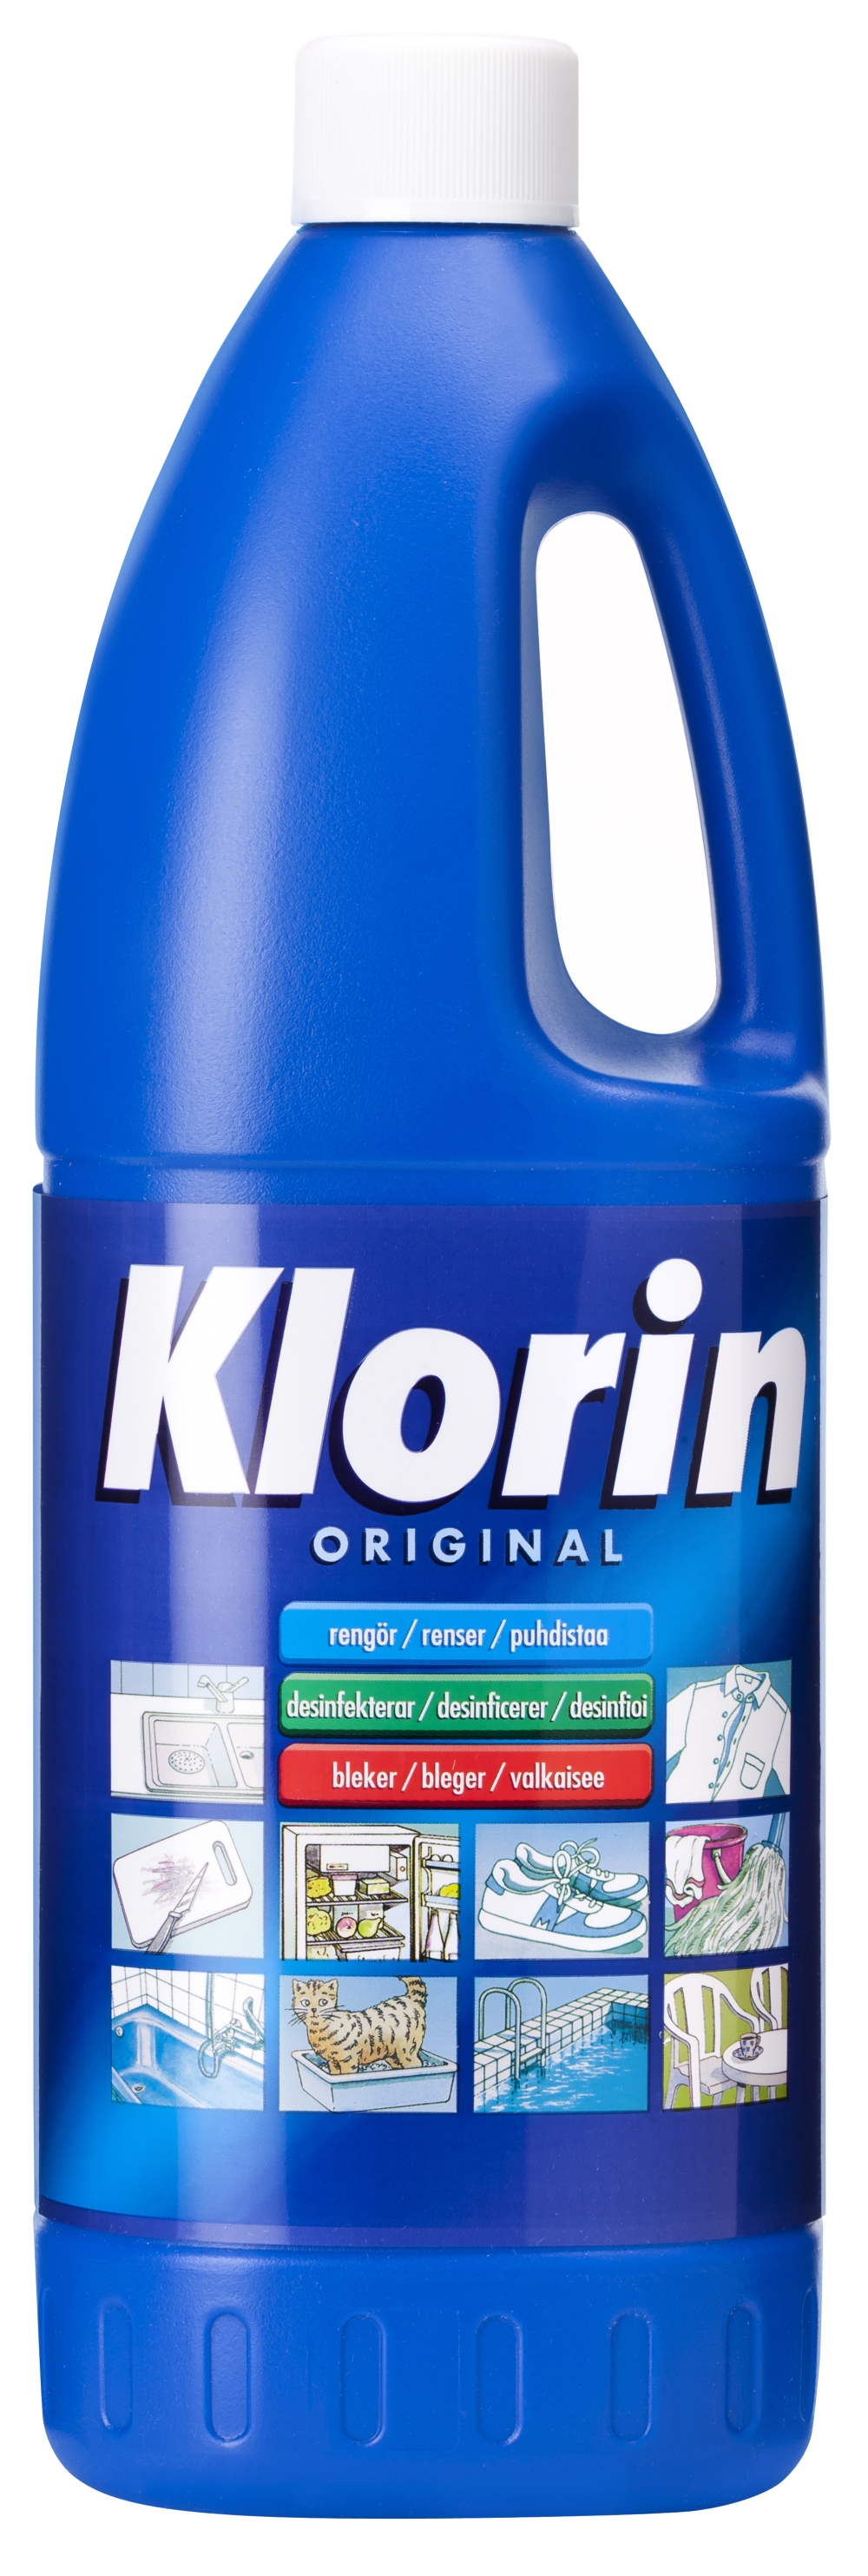 Blekmedel Klorin - 1,5l naturell original